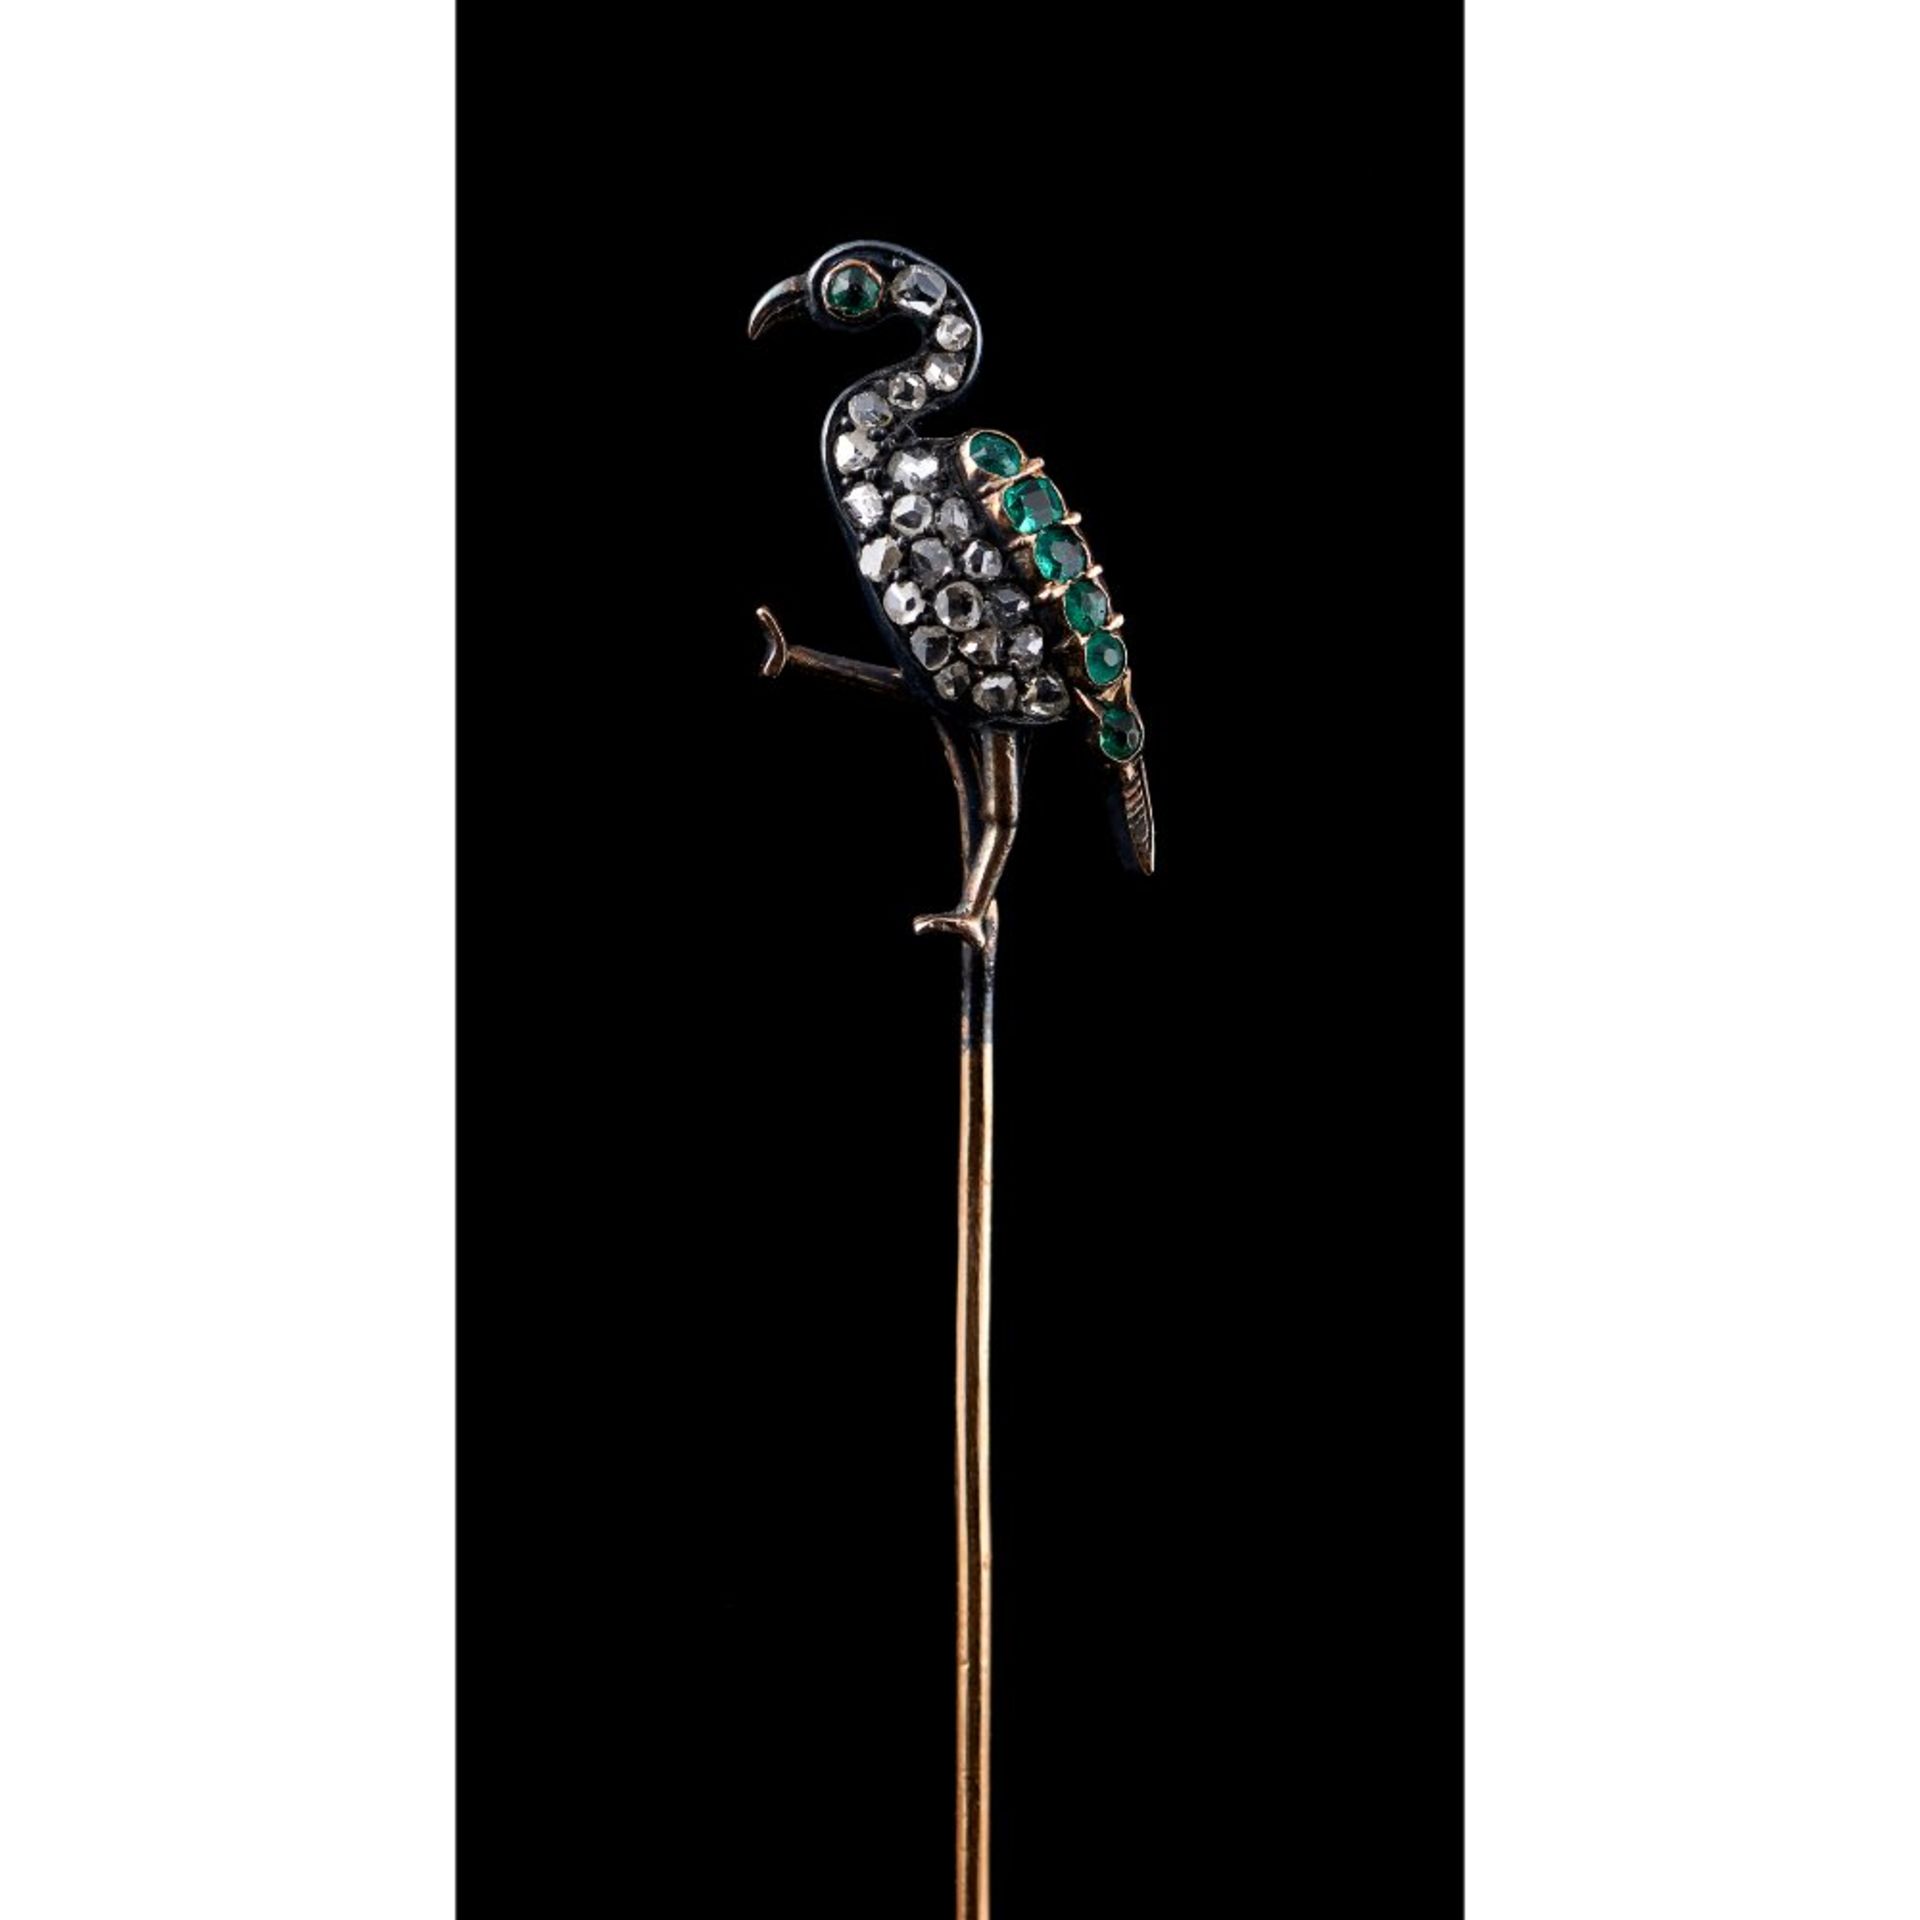 A long legged bird tie pin